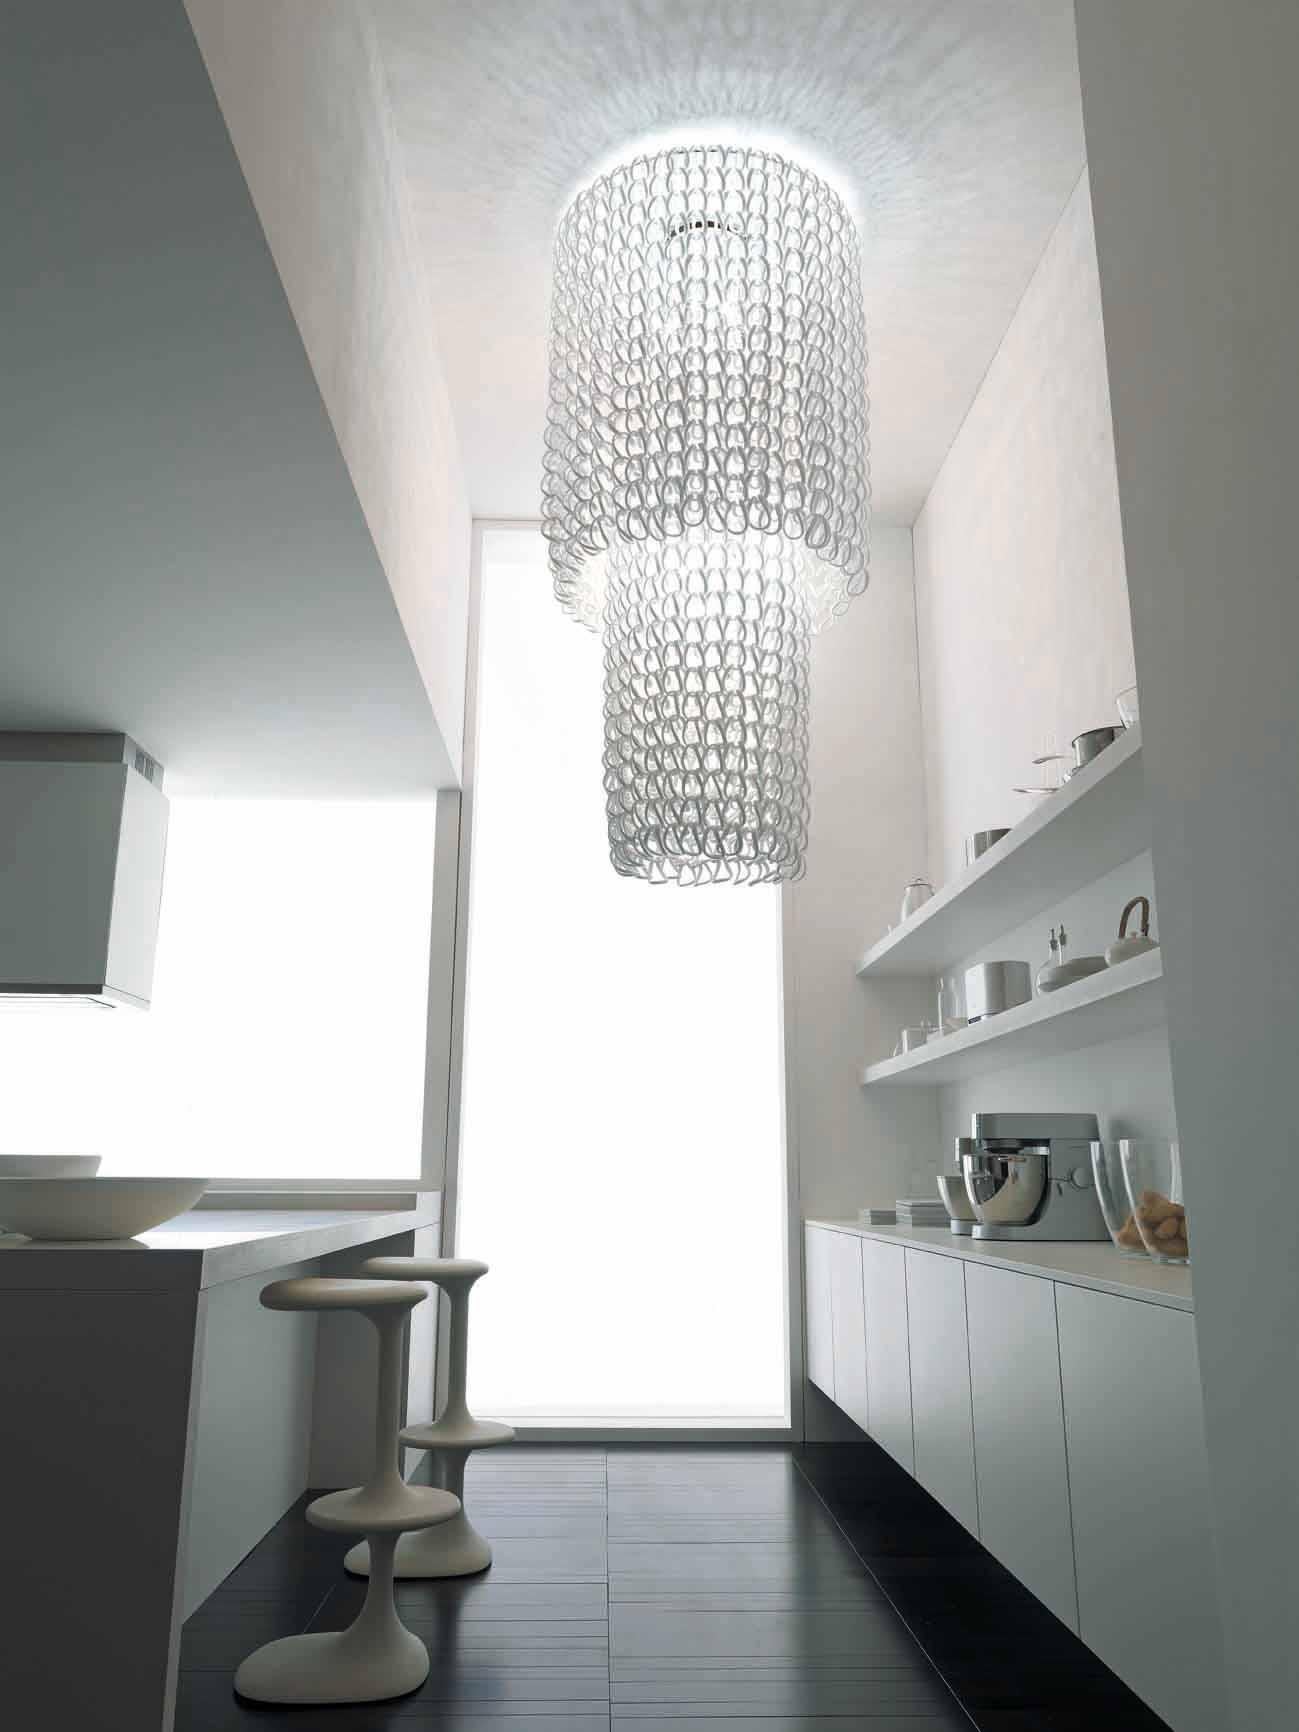 Die Collection Giogali ist ein dekoratives Beleuchtungssystem, das auf einem einzigen Element basiert: dem handgefertigten Glasglied. Cascade-Kronleuchter in Kristall. Metallteile in Chrom. E26-Beleuchtung.
 